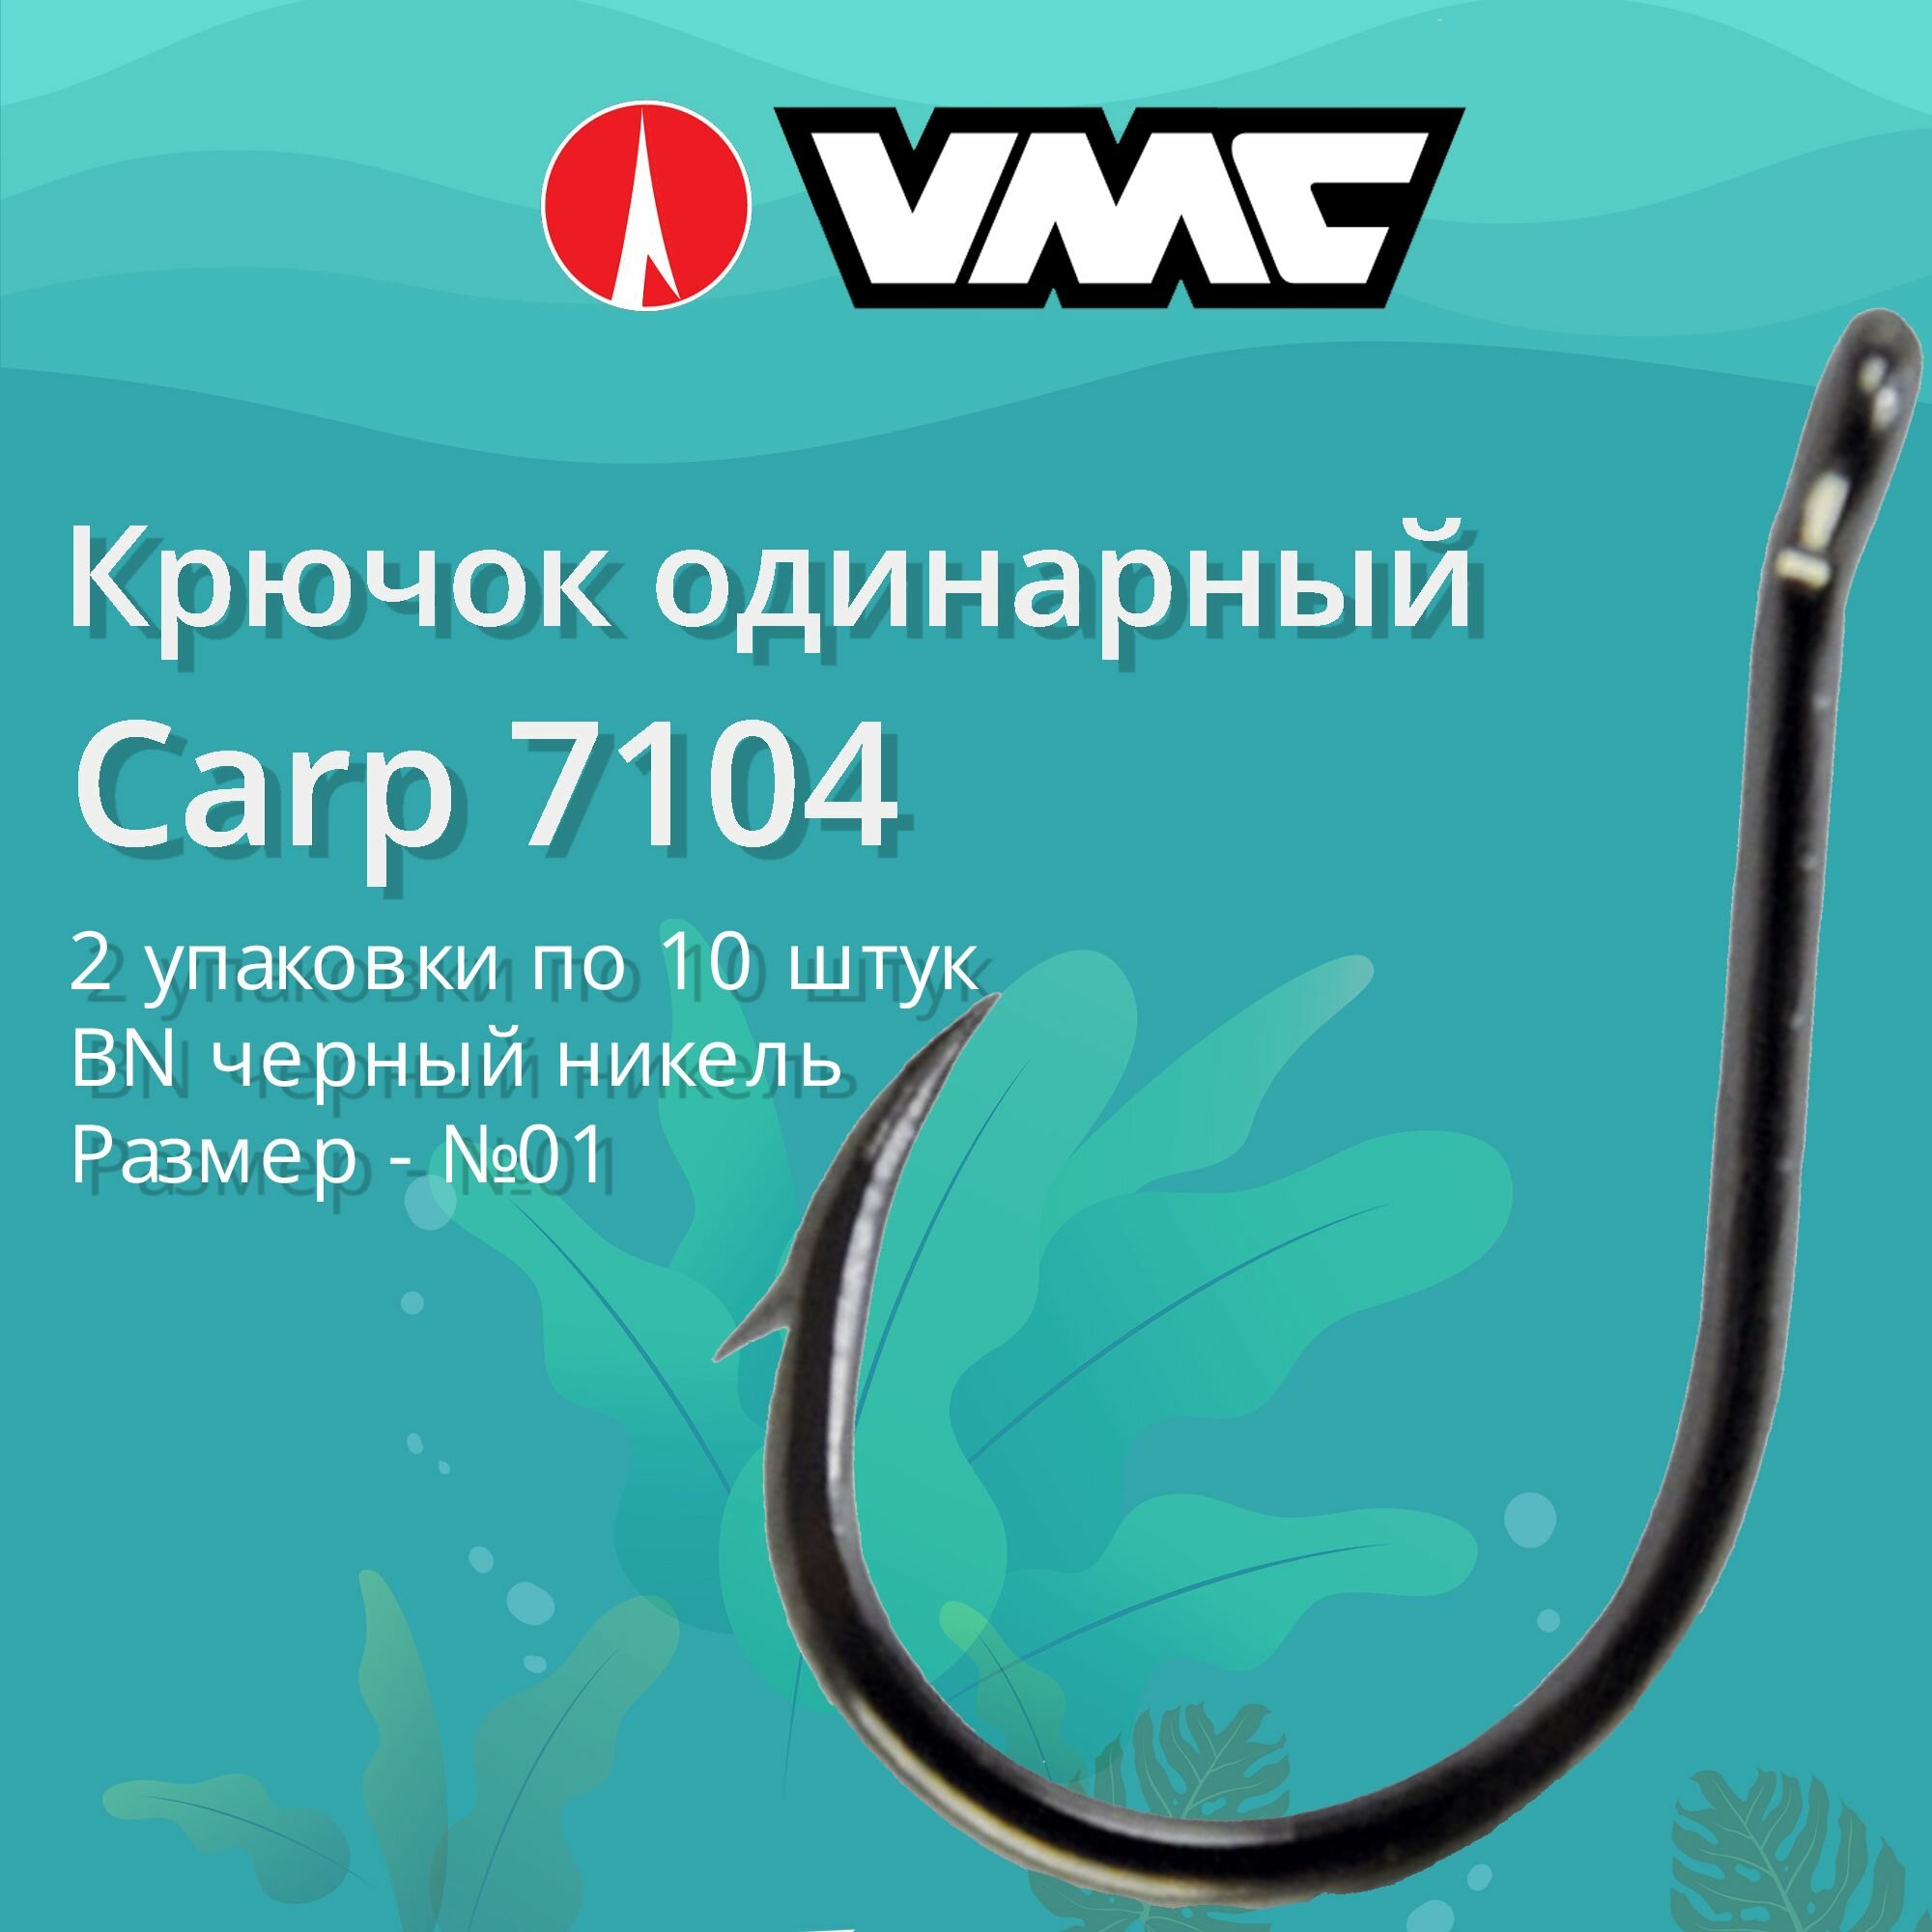 Крючки для рыбалки (одинарный) VMC Carp 7104 BN (черн. никель) №01 2 упаковки по 10 штук